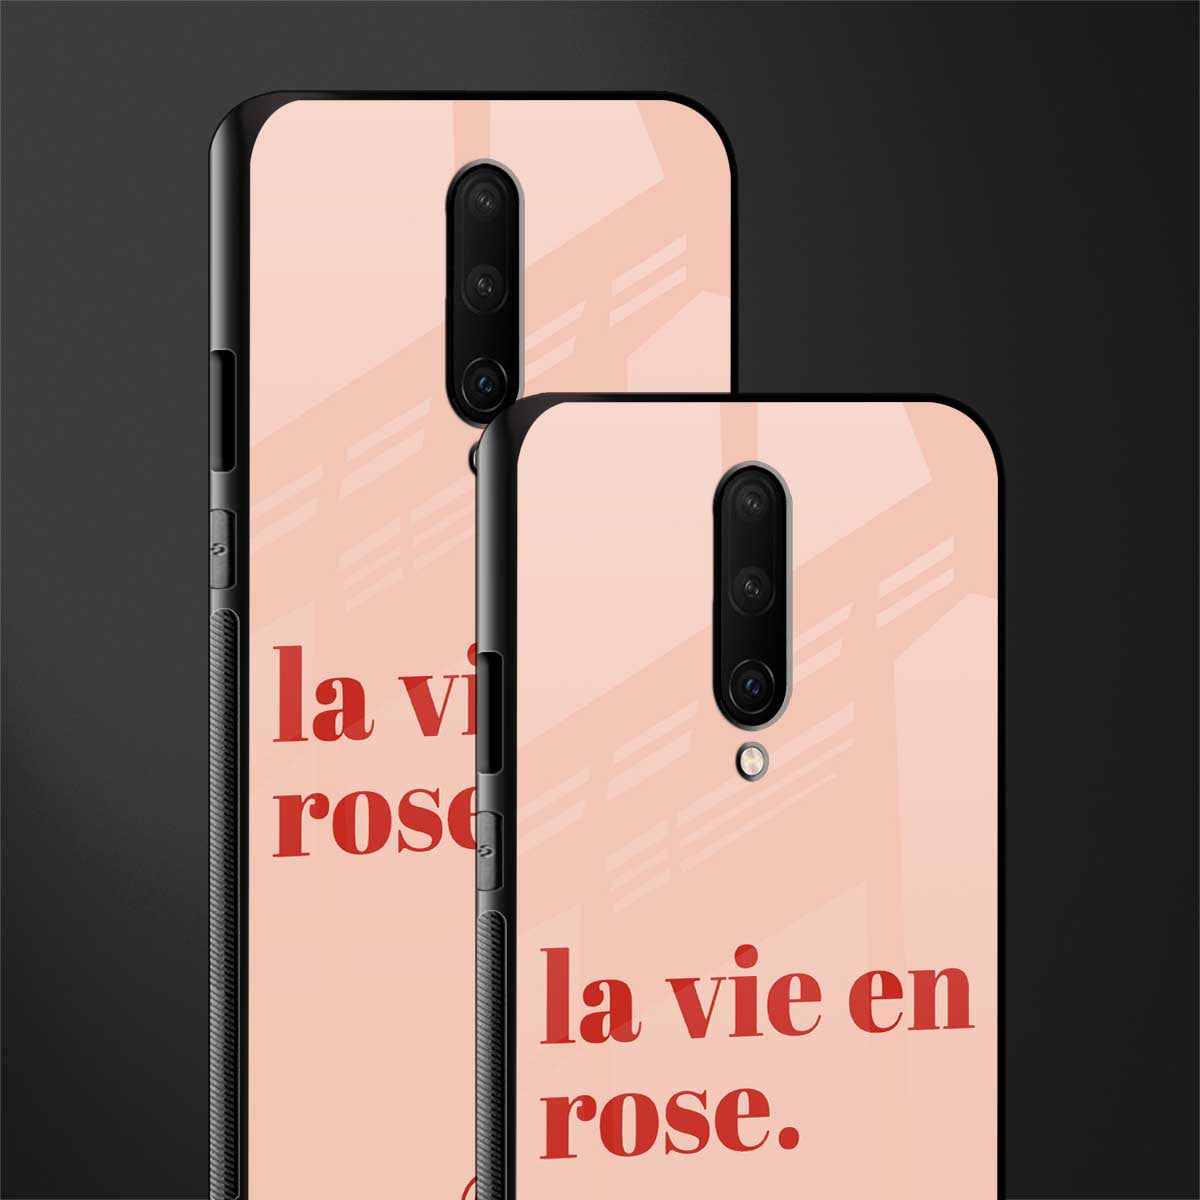 la vie en rose quote glass case for oneplus 7 pro image-2